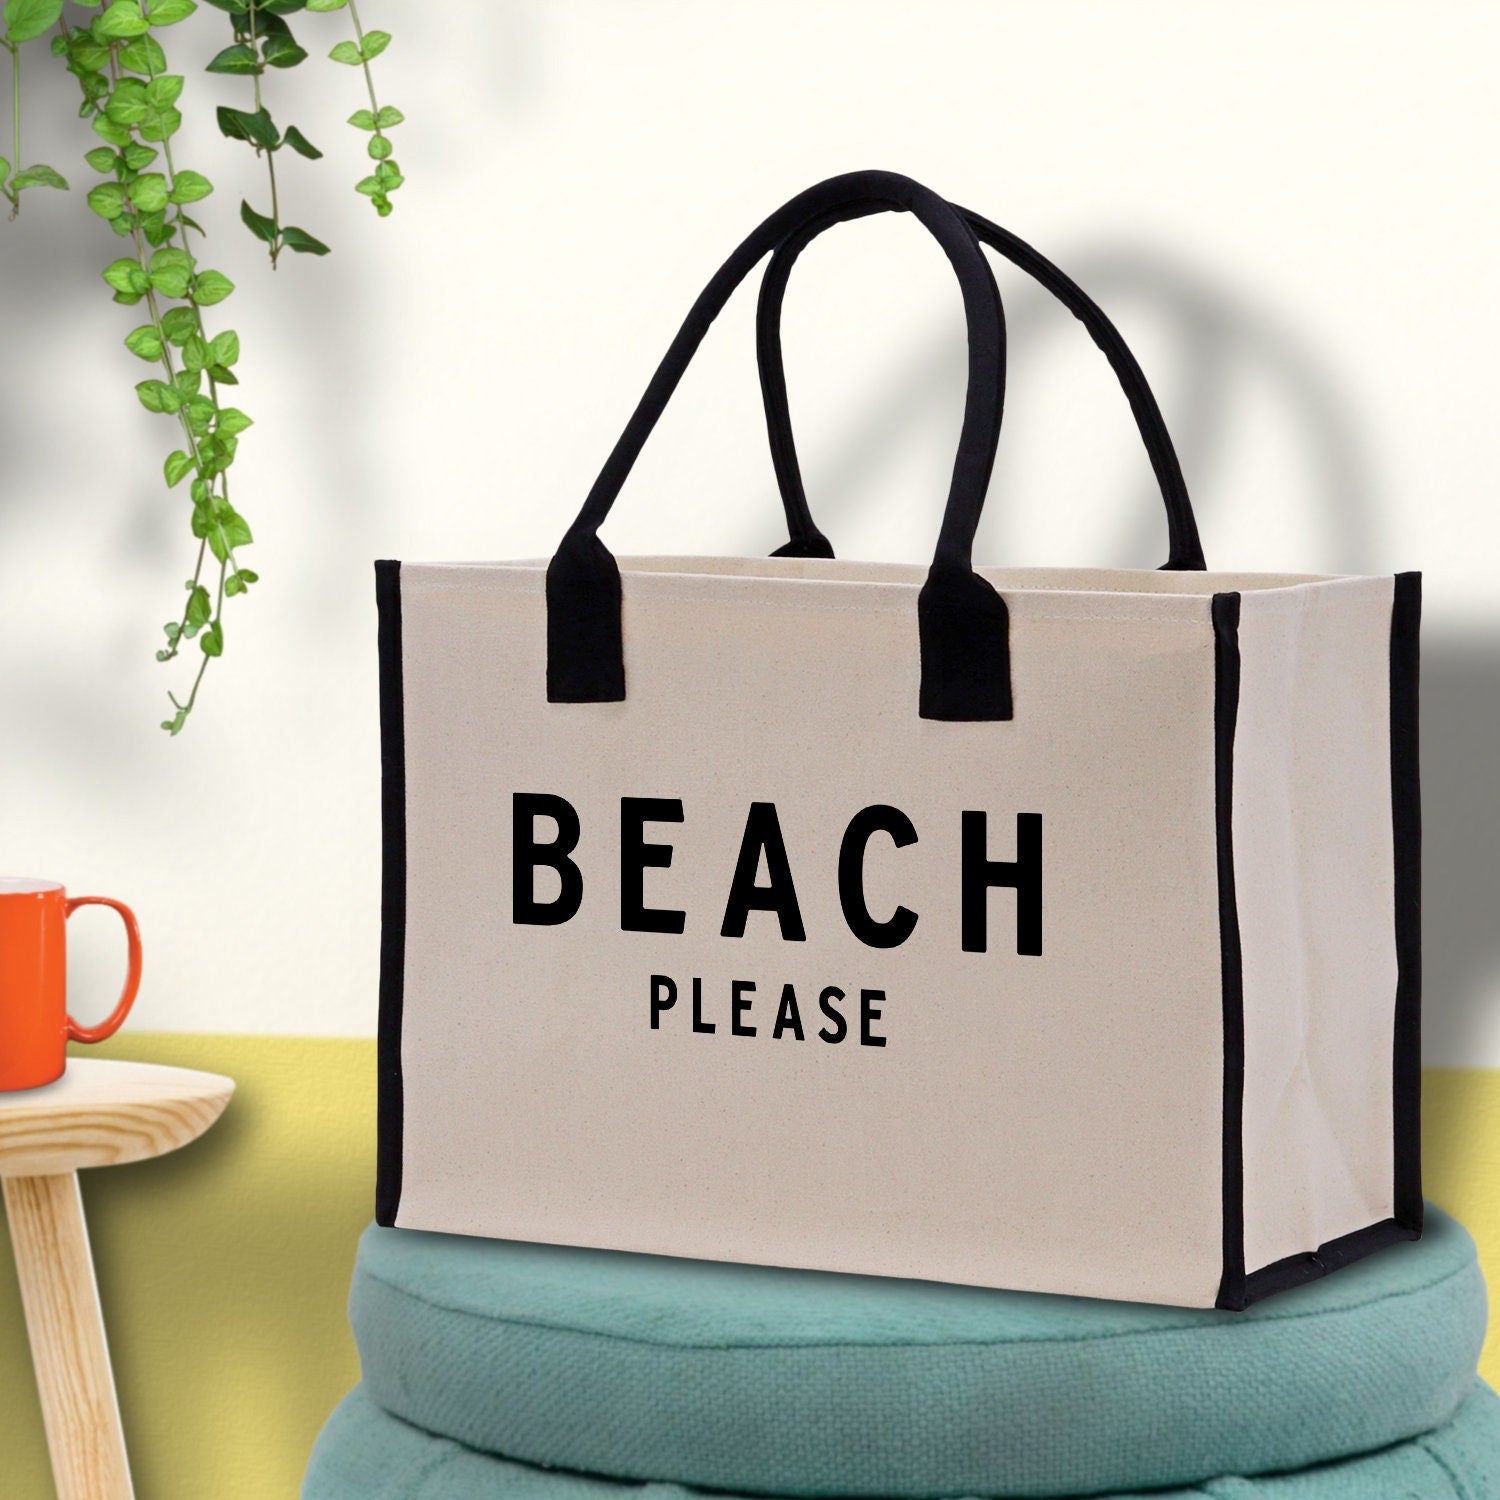 Beach Please Tote Bag - Large Chic Tote Bag - Gift for Her - Girls Weekend Tote - Weekender Bag - Weekend Tote - Beach Tote Bag